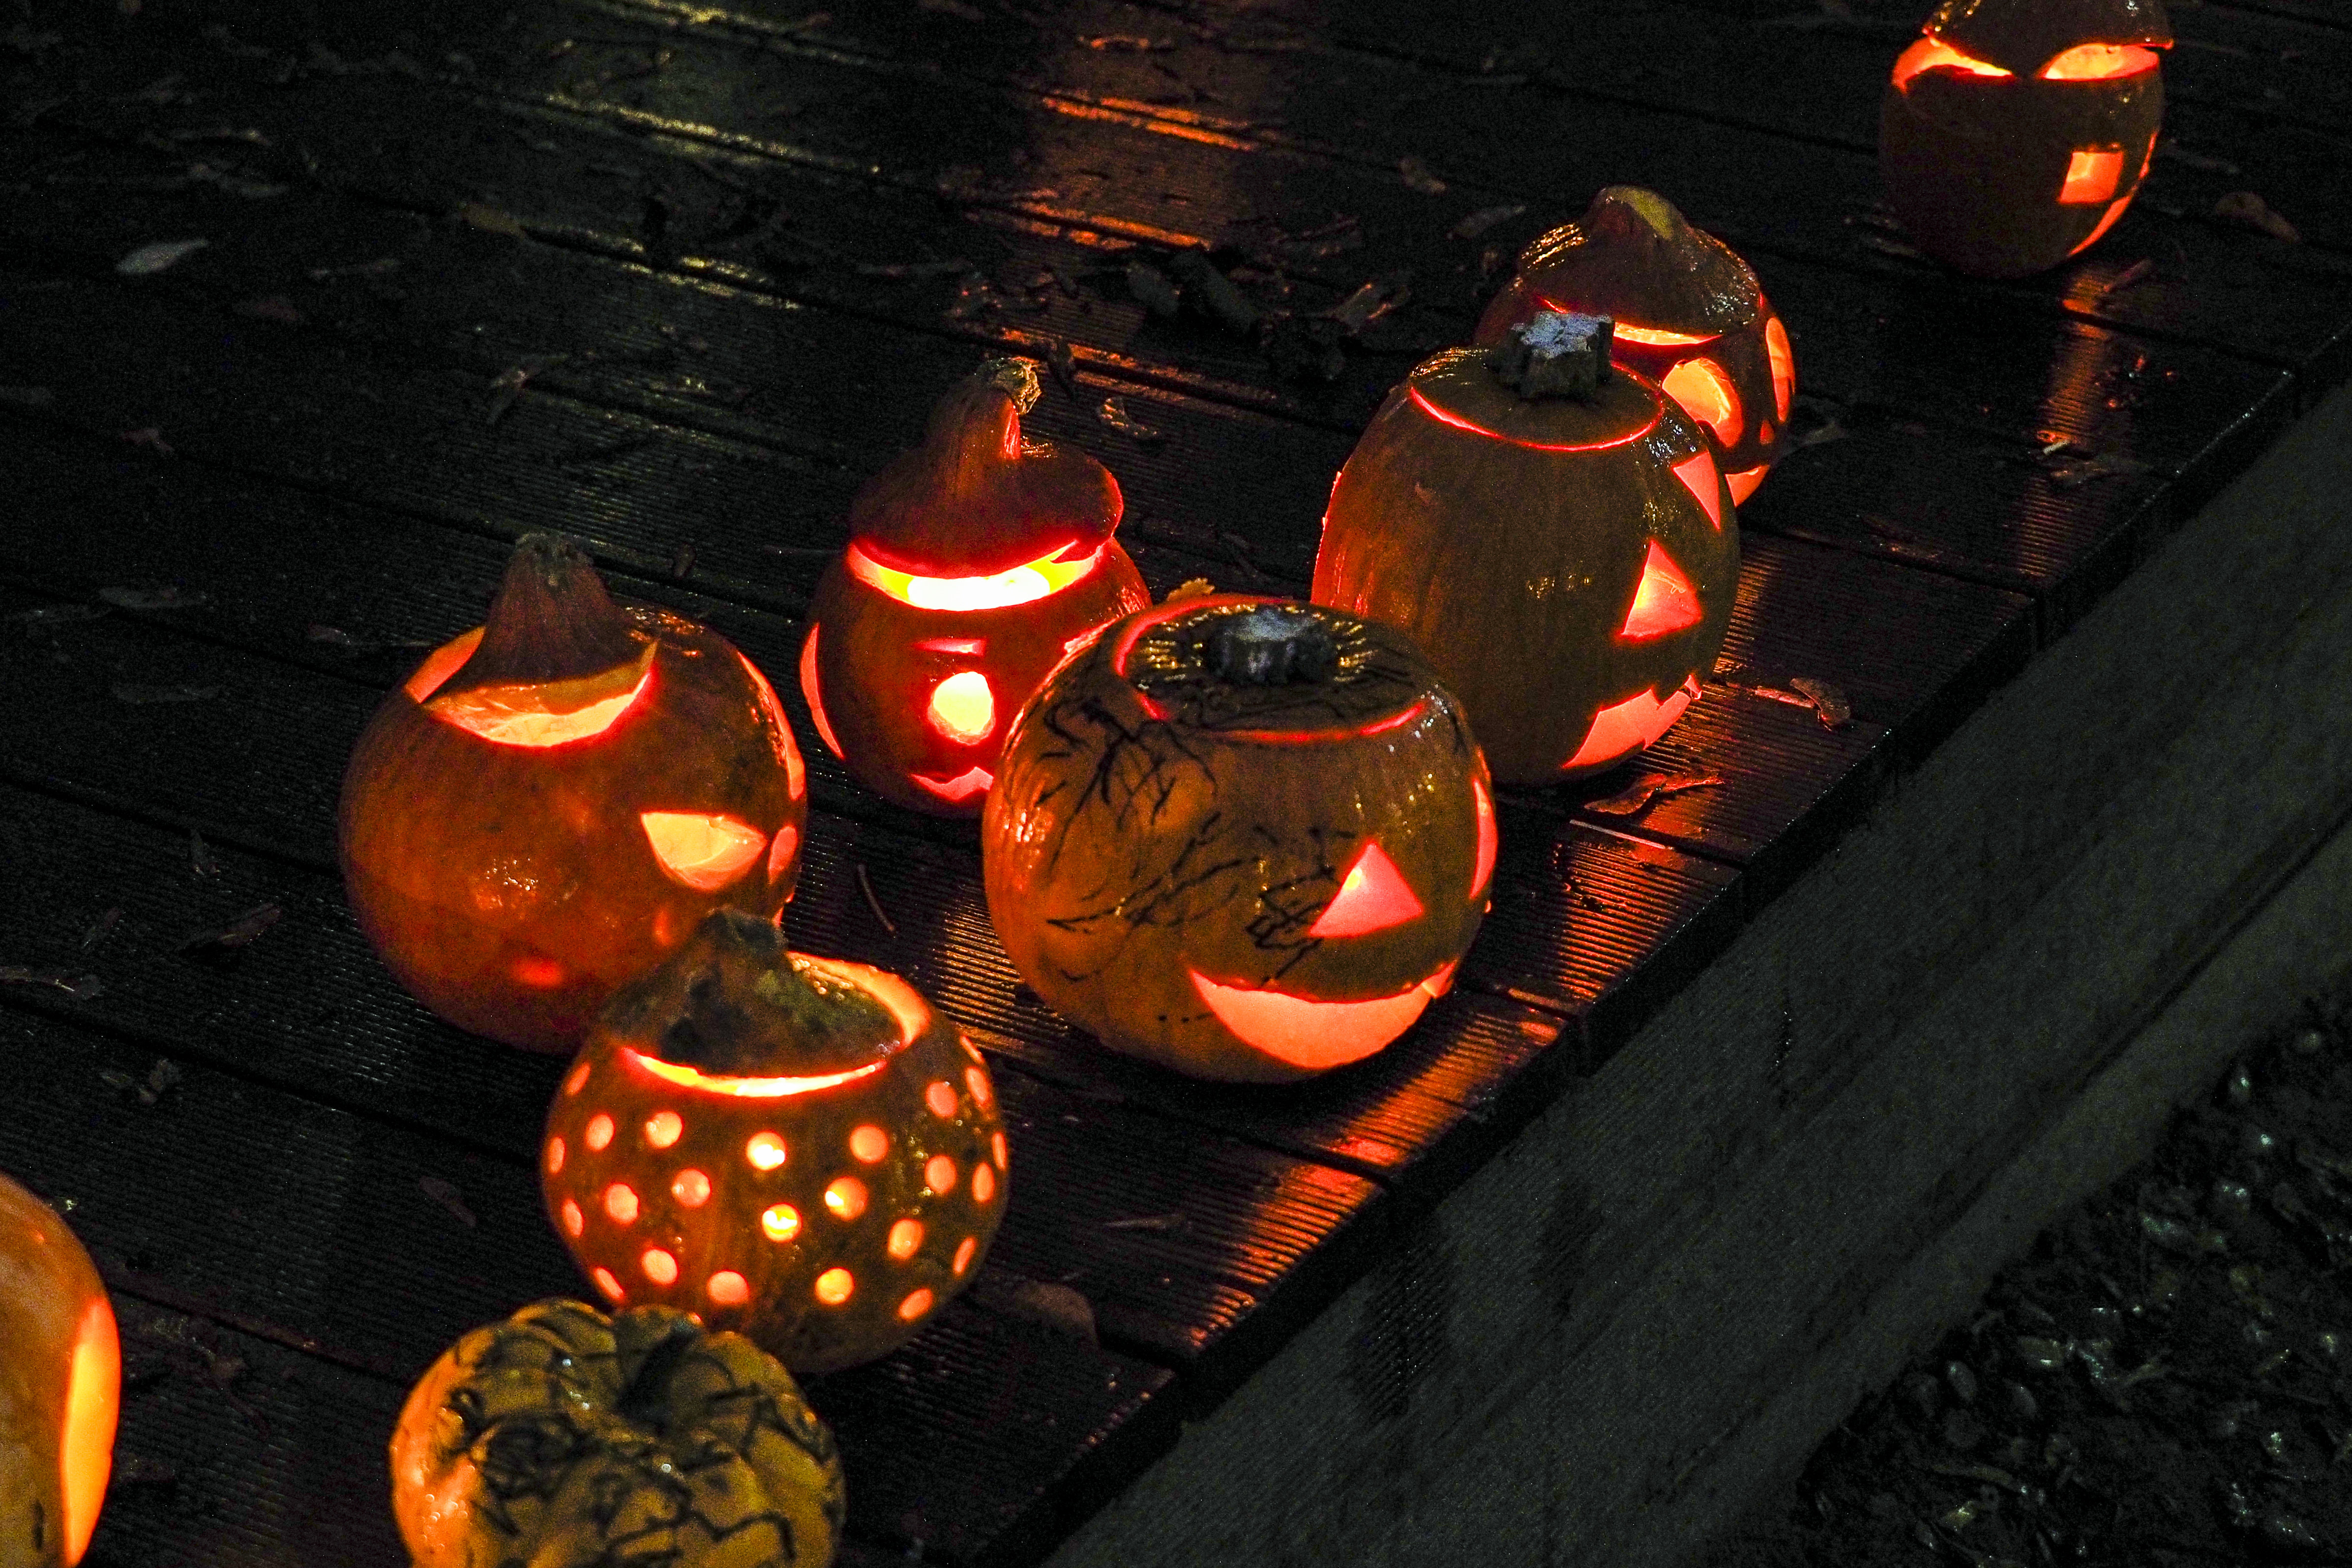 Pagrindinė Helovino dekoracija yra išskabtuotas moliūgas.V.Ščiavinsko nuotr.